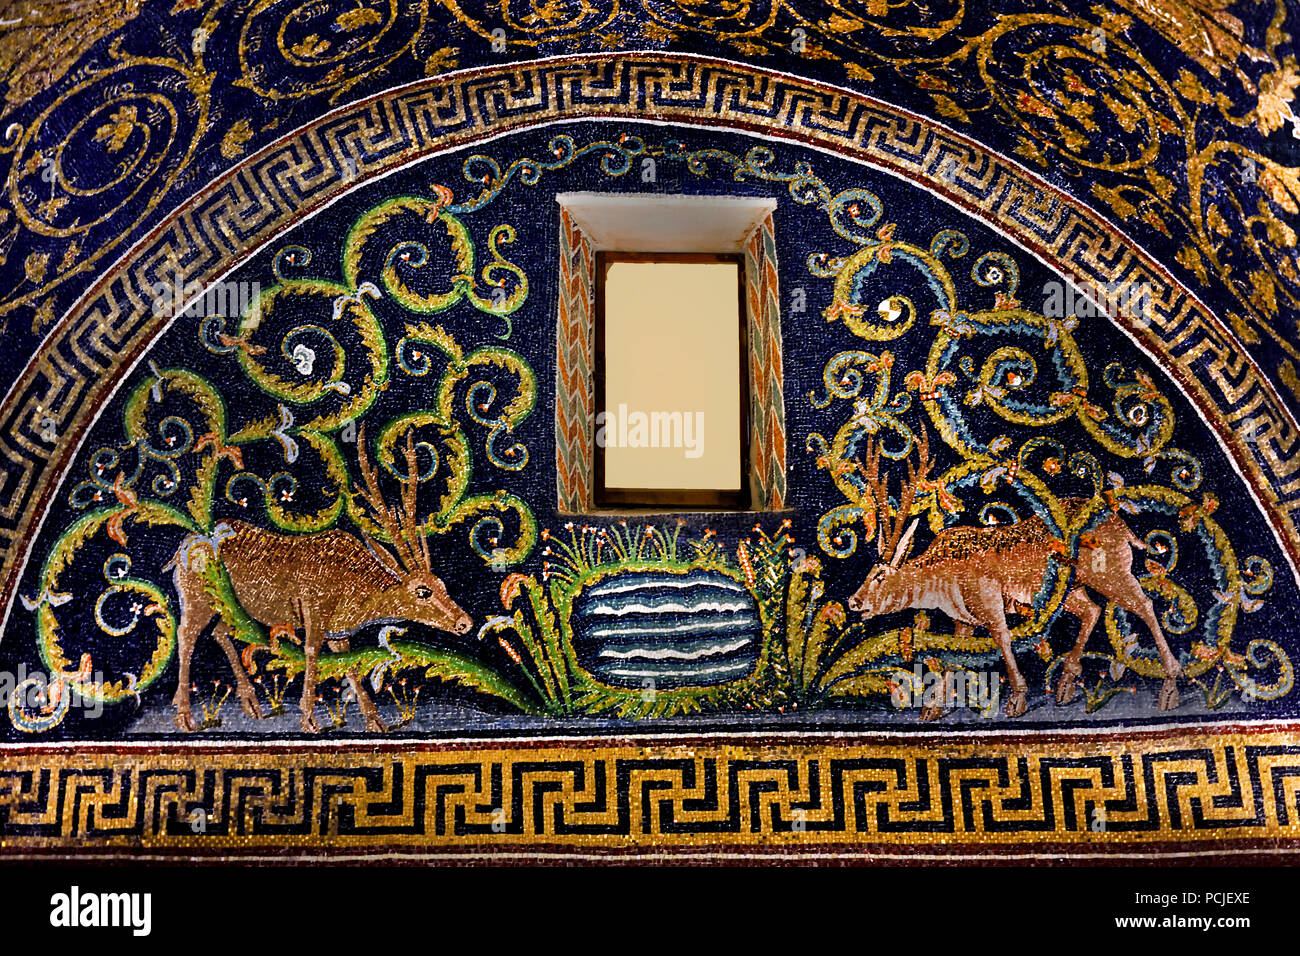 Lunette avec un deerin le Mausolée de Galla Placidia à Ravenne(386 - 450 AD) Mosaïques ( la fin de la période romaine et byzantine, l'architecture) Émilie-romagne - Italie du Nord. ( Site du patrimoine mondial de l'Unesco ) Banque D'Images